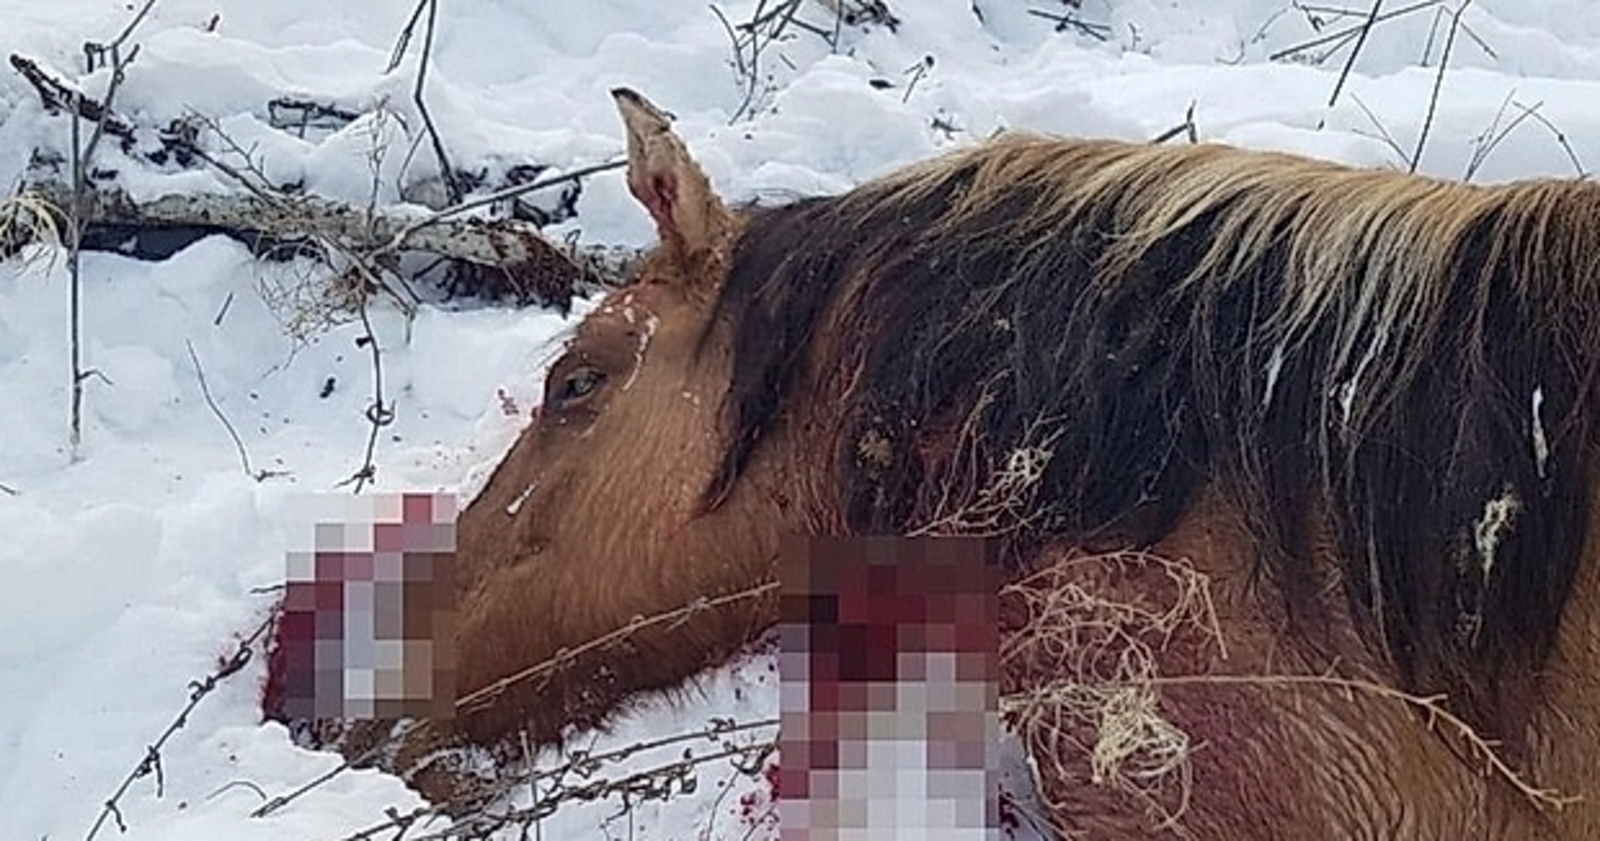 Управляющий фермерским хозяйством рассказал, кто же так жестоко убил 14 лошадей в Башкирии